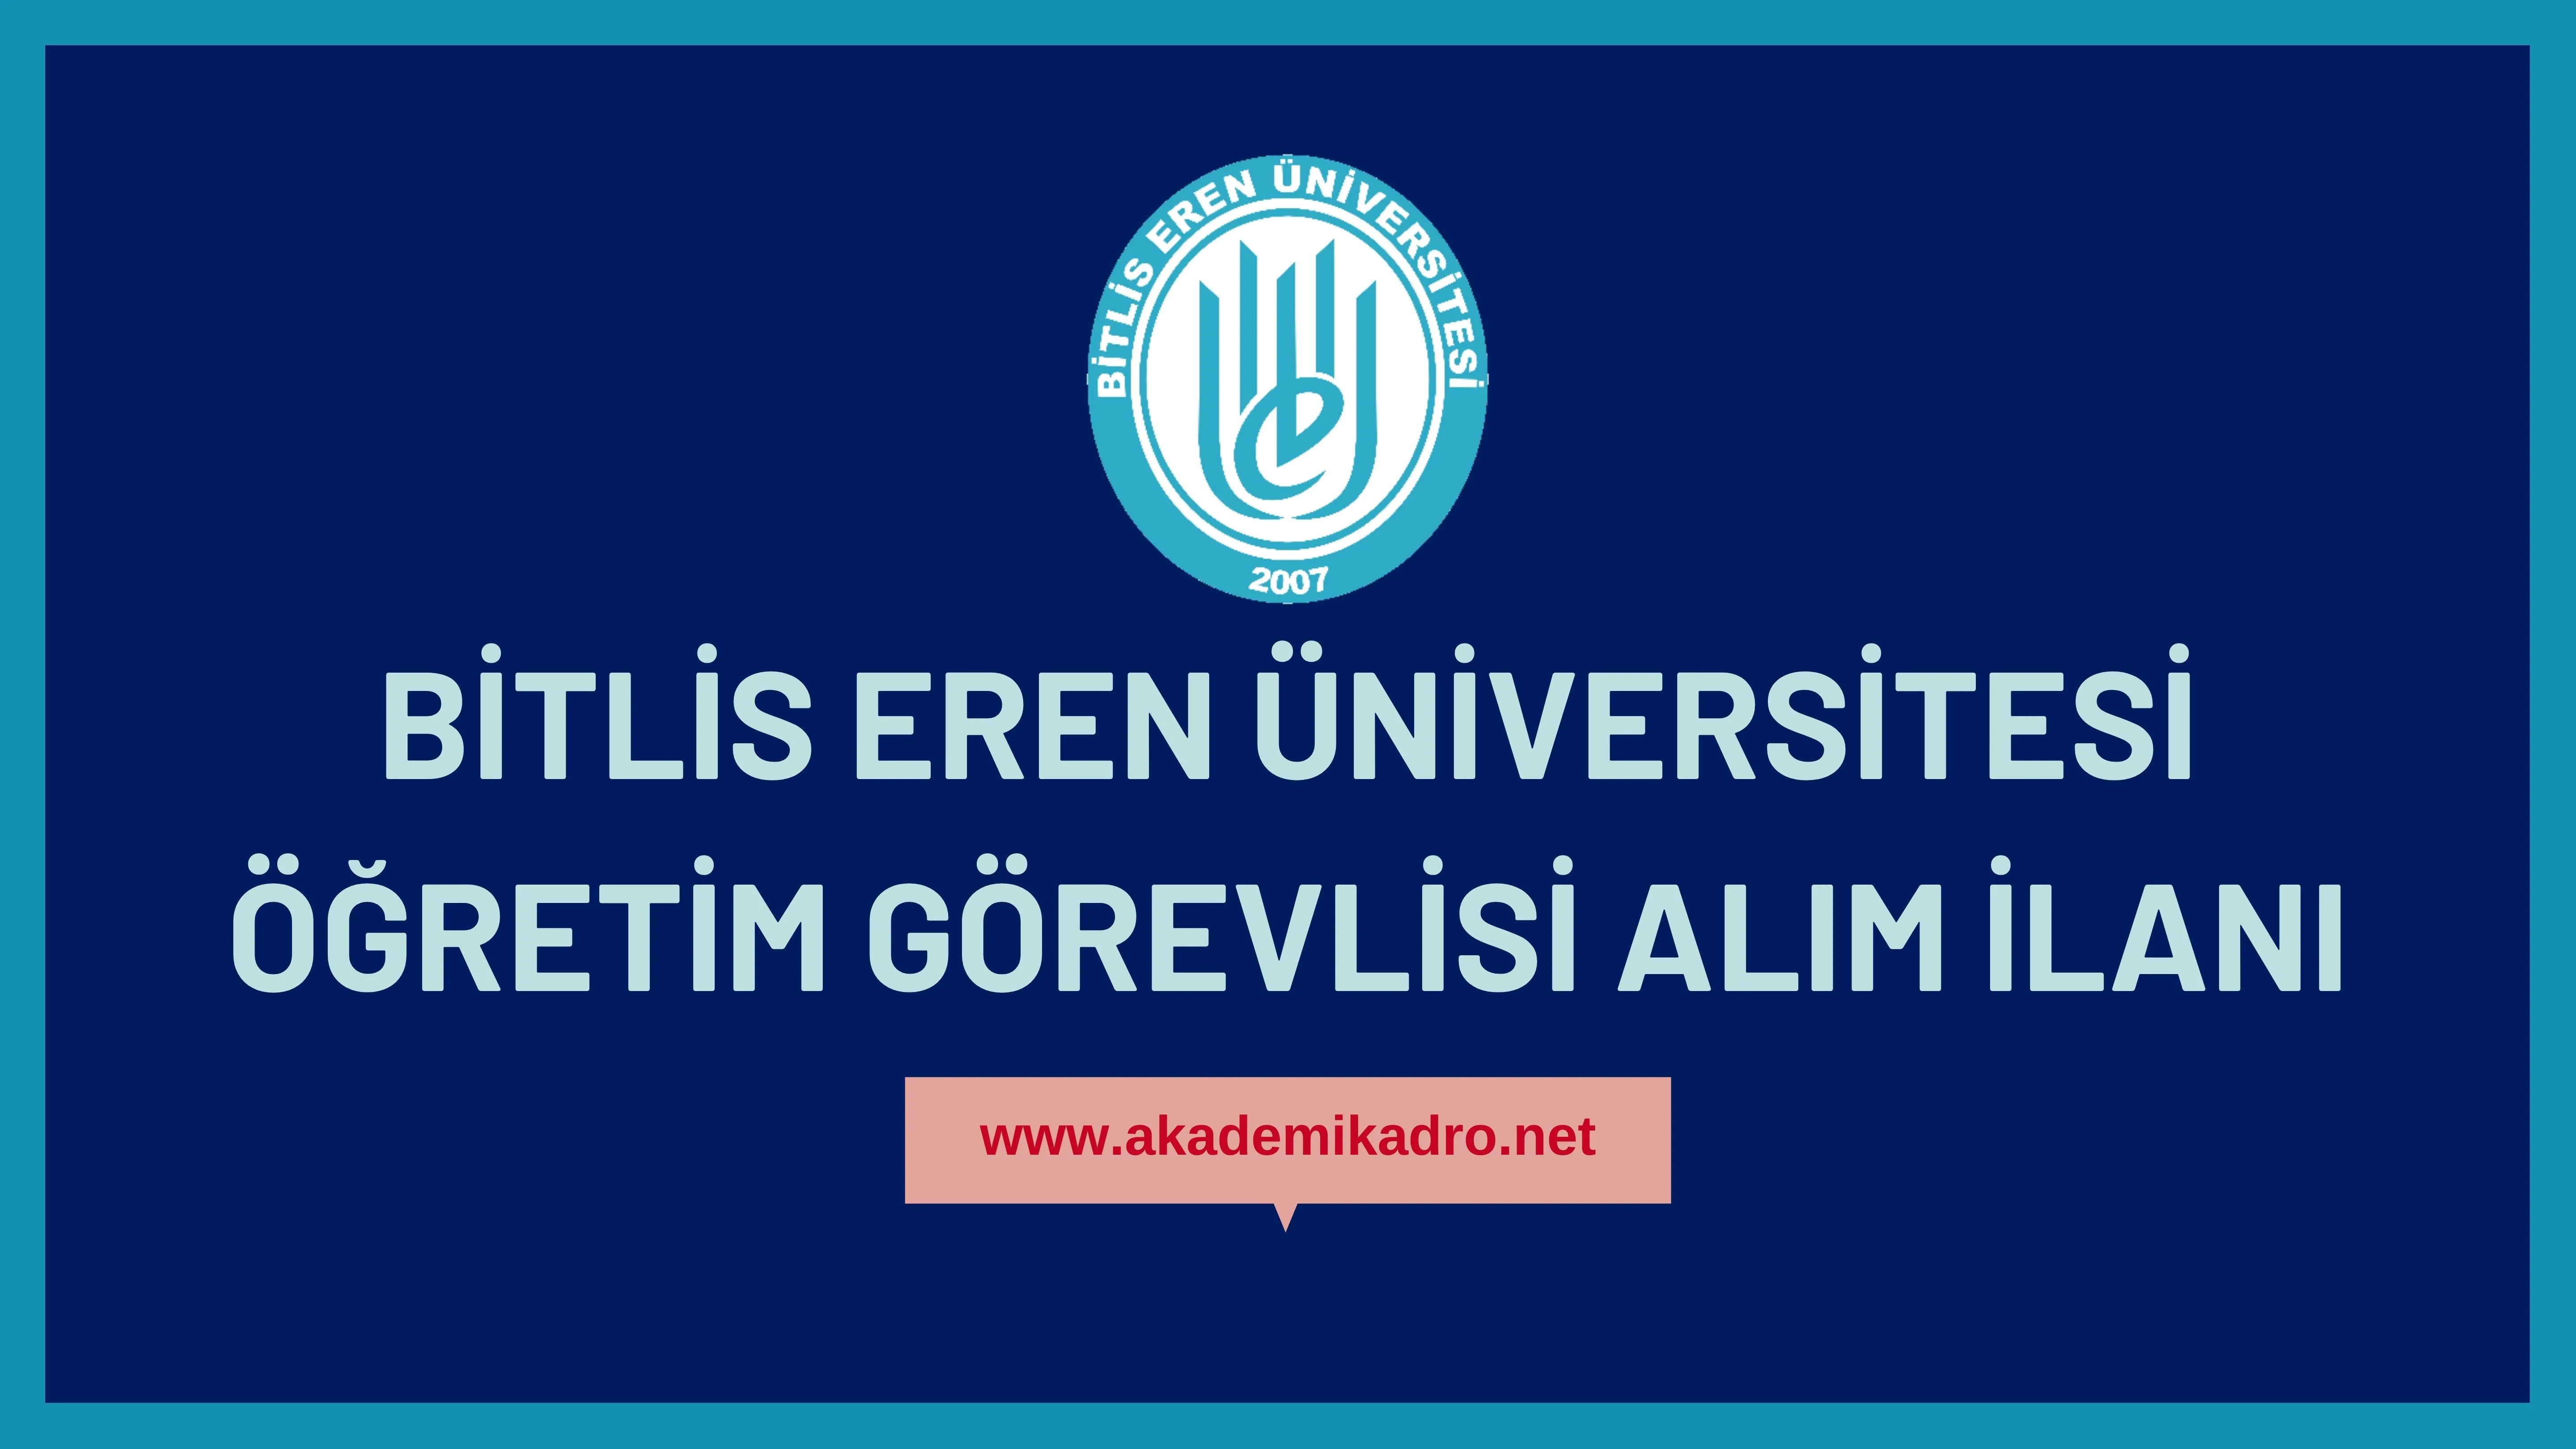 Bitlis Eren Üniversitesi 4 Öğretim Görevlisi alacaktır. Son başvuru tarihi 10 Kasım 2022